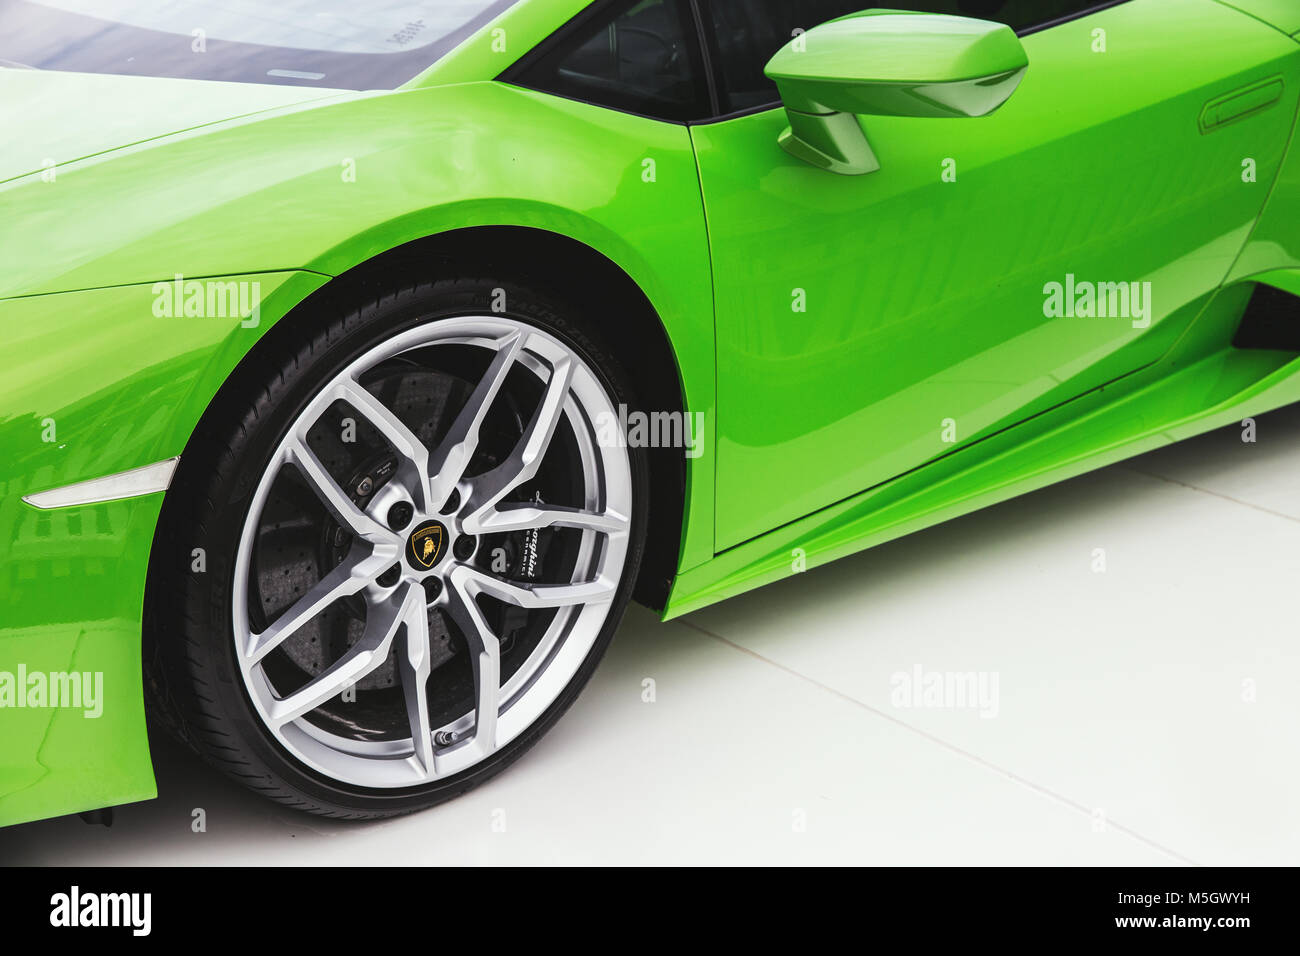 Londres - le 26 juin 2015 : Lamborghini voiture de sport de couleur verte brillante Banque D'Images